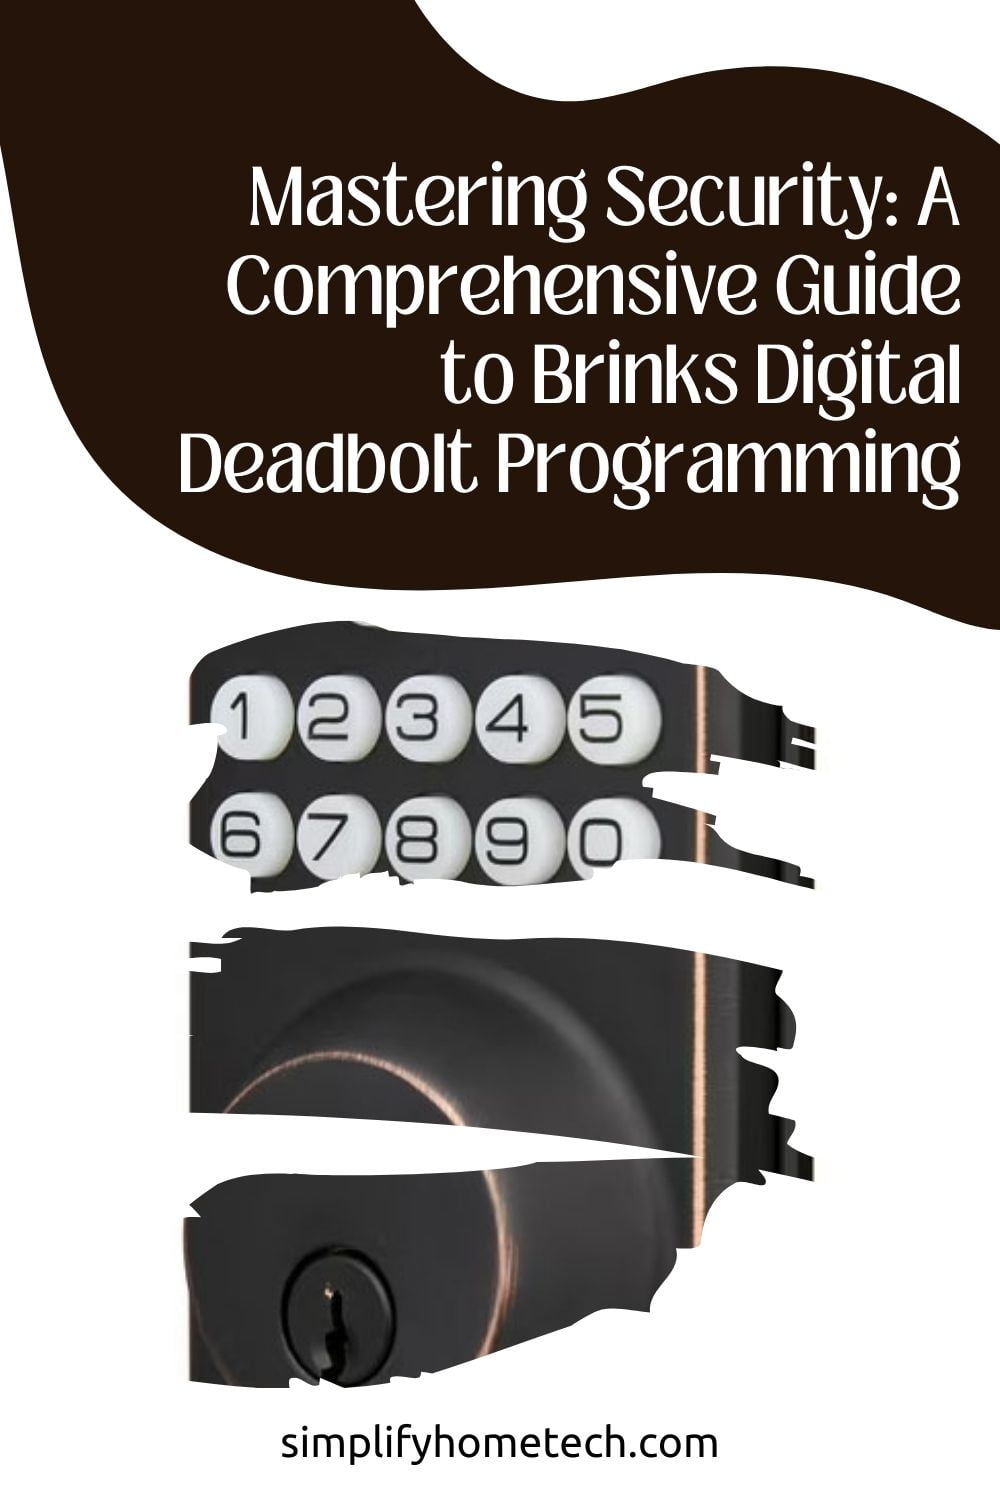 Brinks Digital Deadbolt Programming Instructions